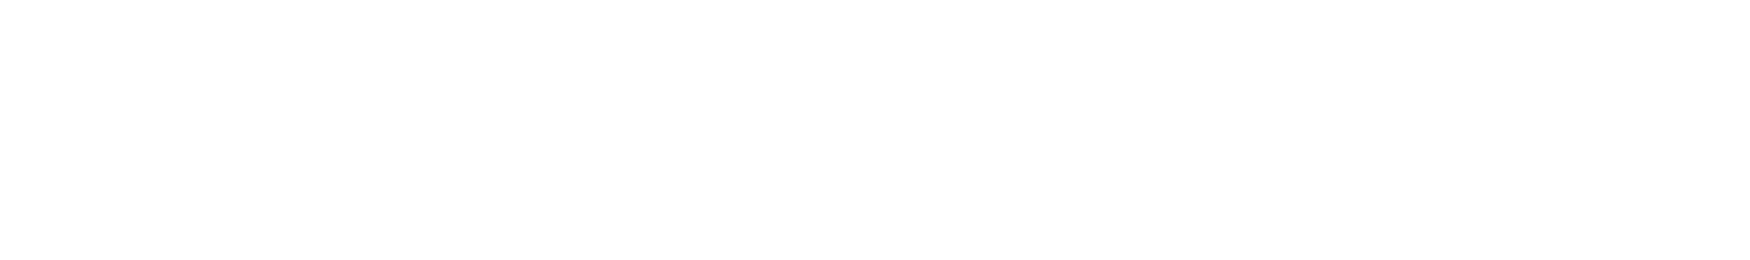 Morgan Stanley logo 2